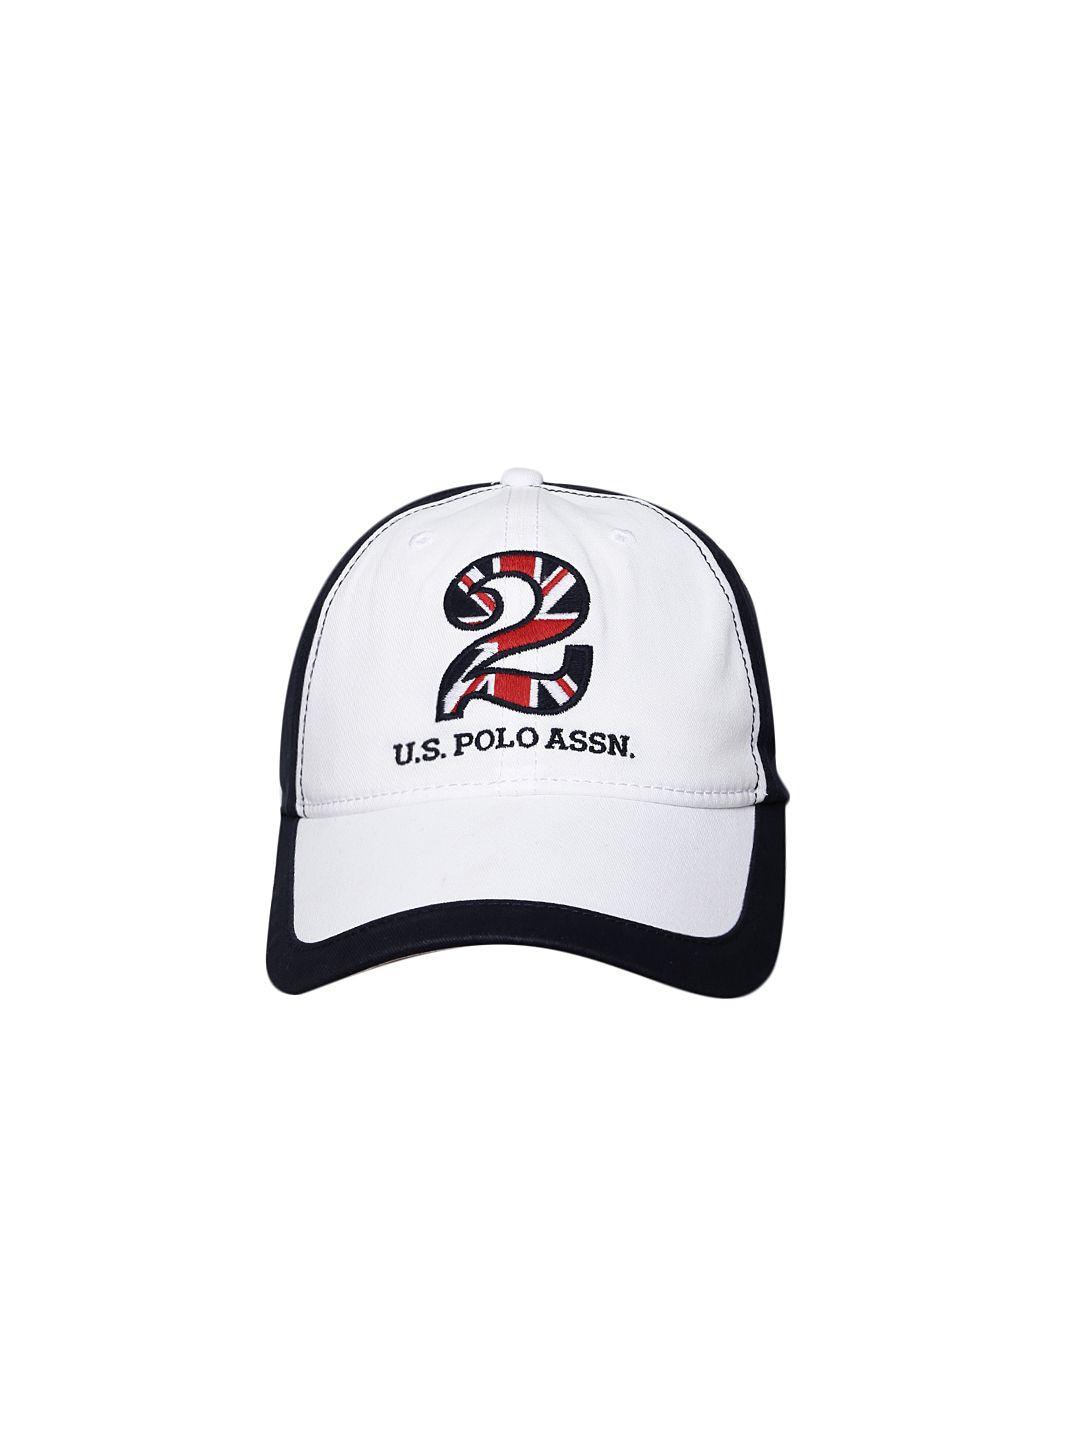 u.s. polo assn. men navy blue & white colourblocked baseball cap